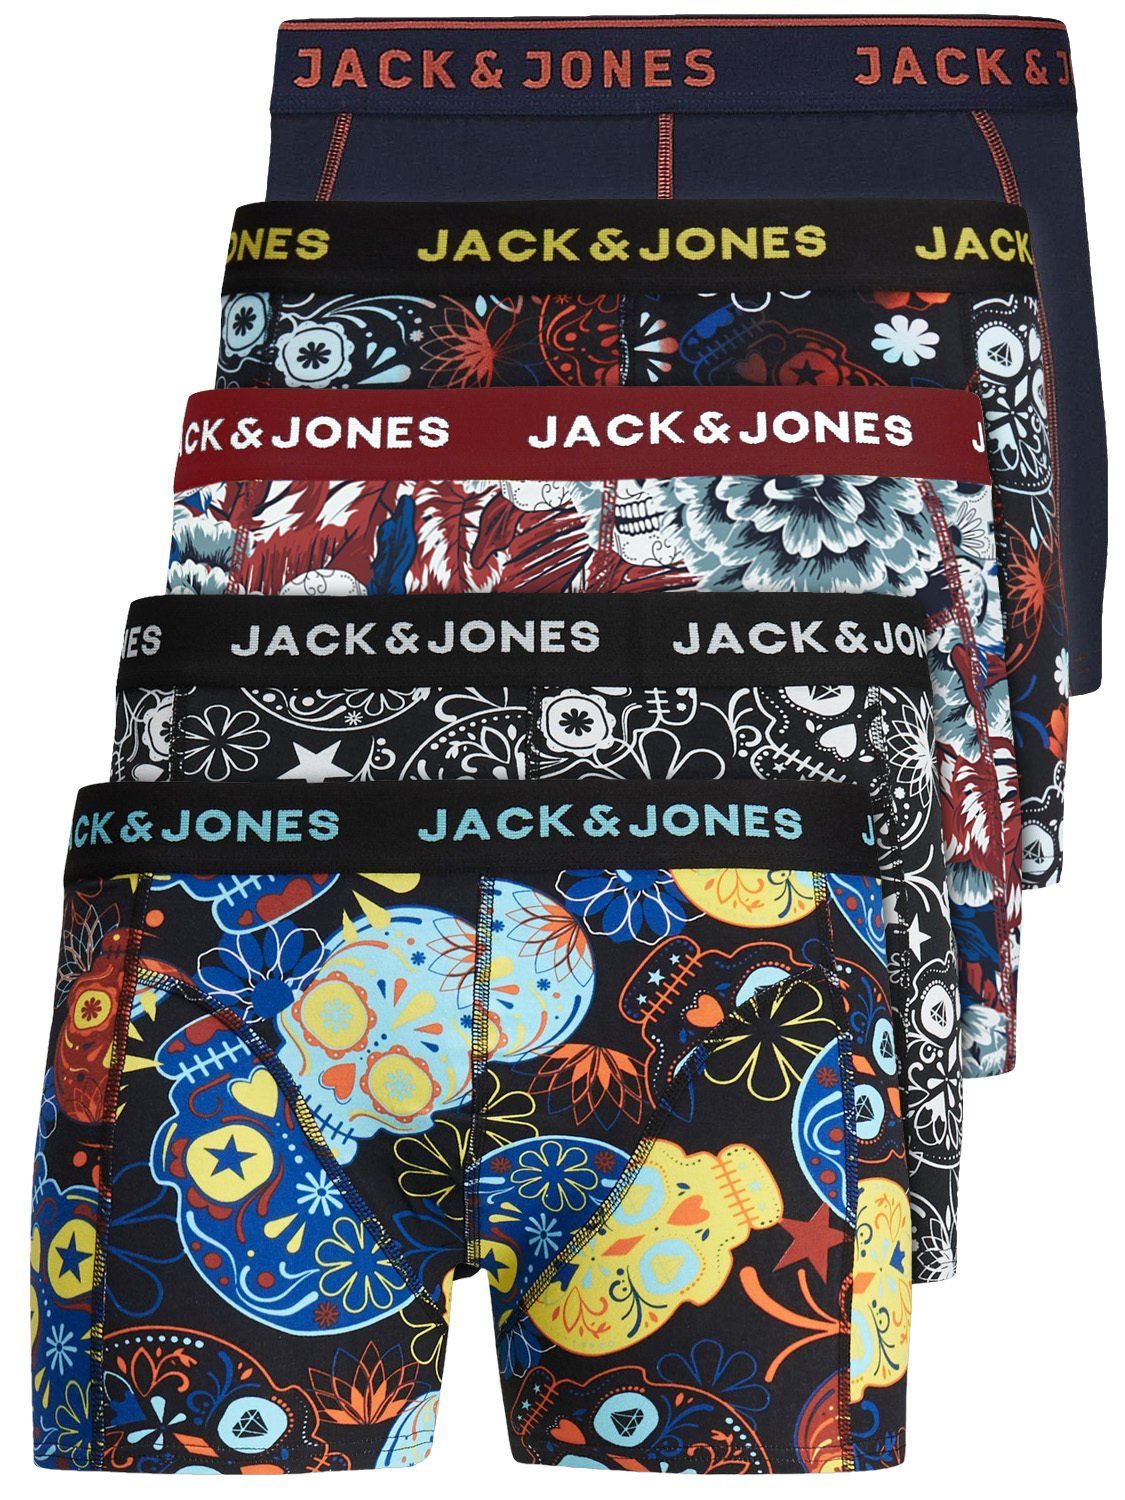 Jack & Jones Boxershorts Jacvel (5-St., 5er Pack) gute Passform durch elastische Baumwollqualität Detail Mix 3